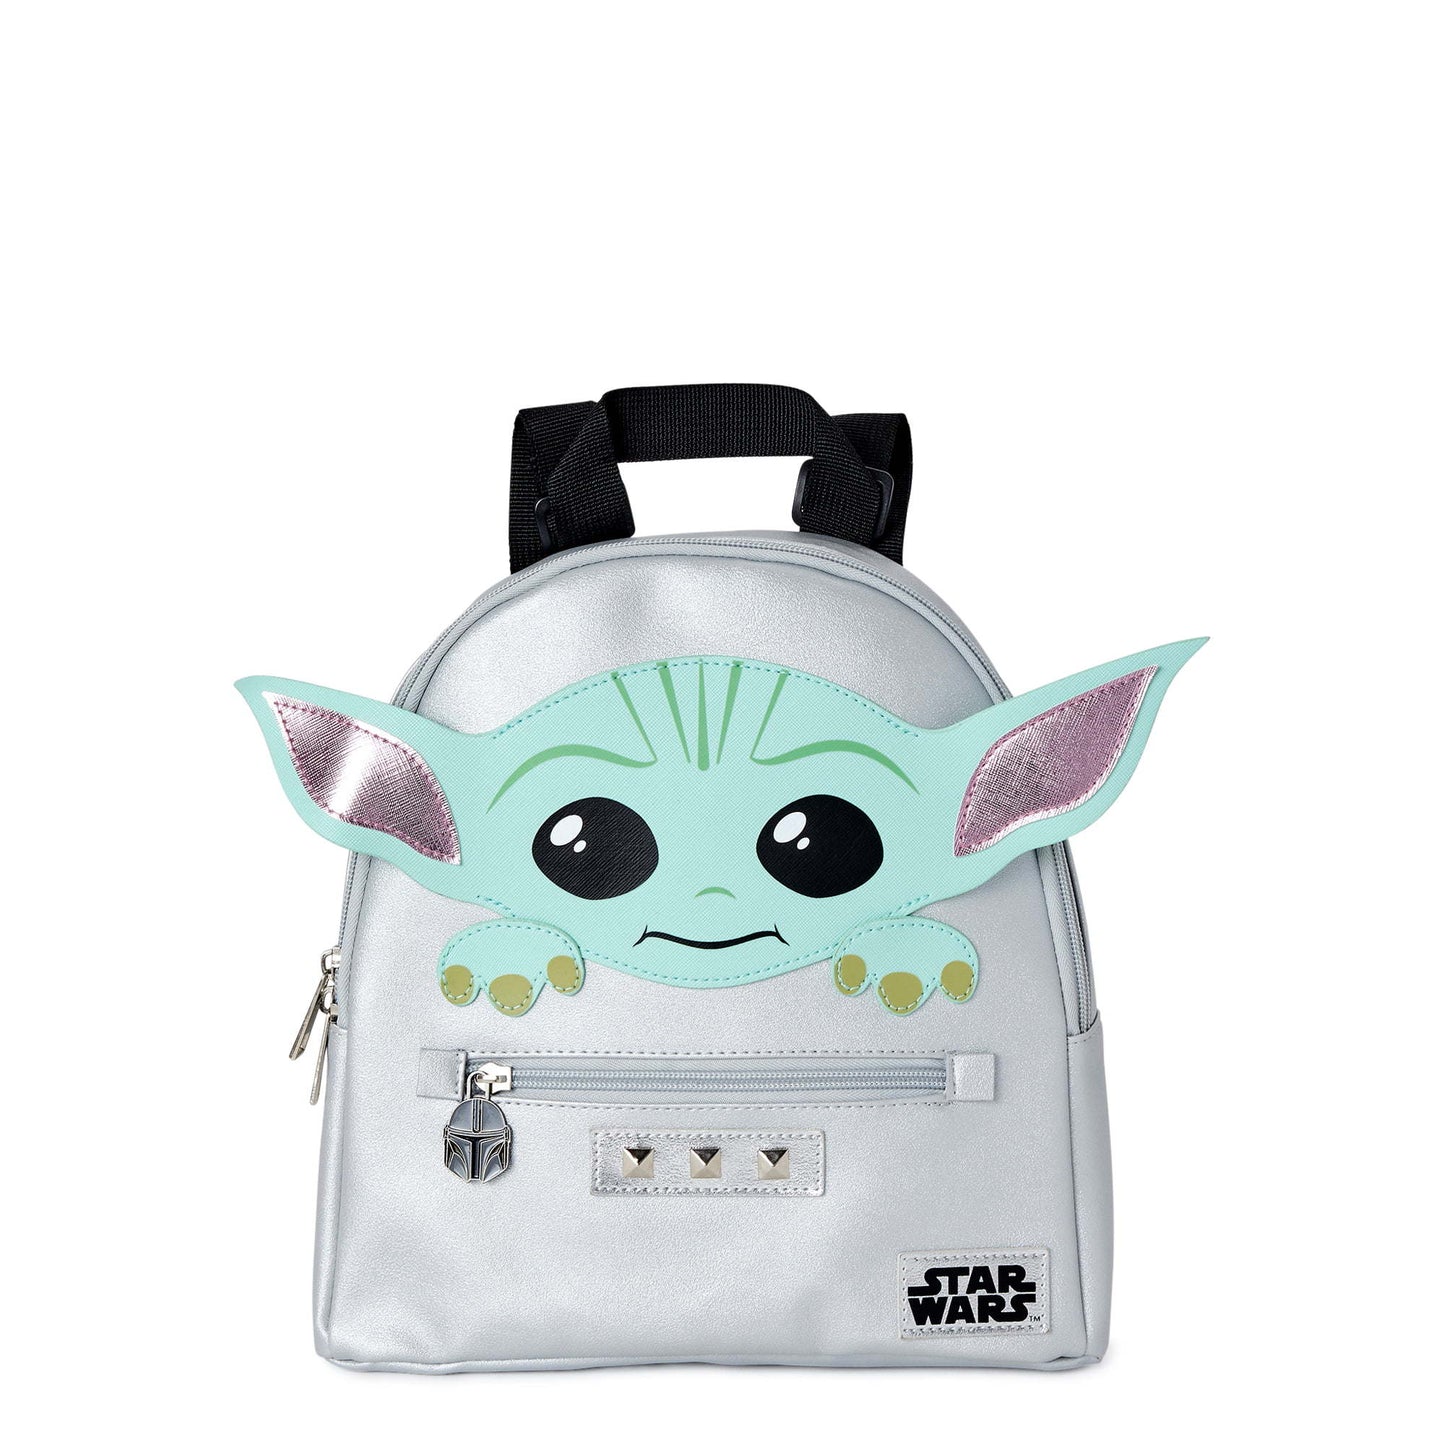 Star Wars Grogu Baby Yoda Mini sac à dos pour femme Gris Argent